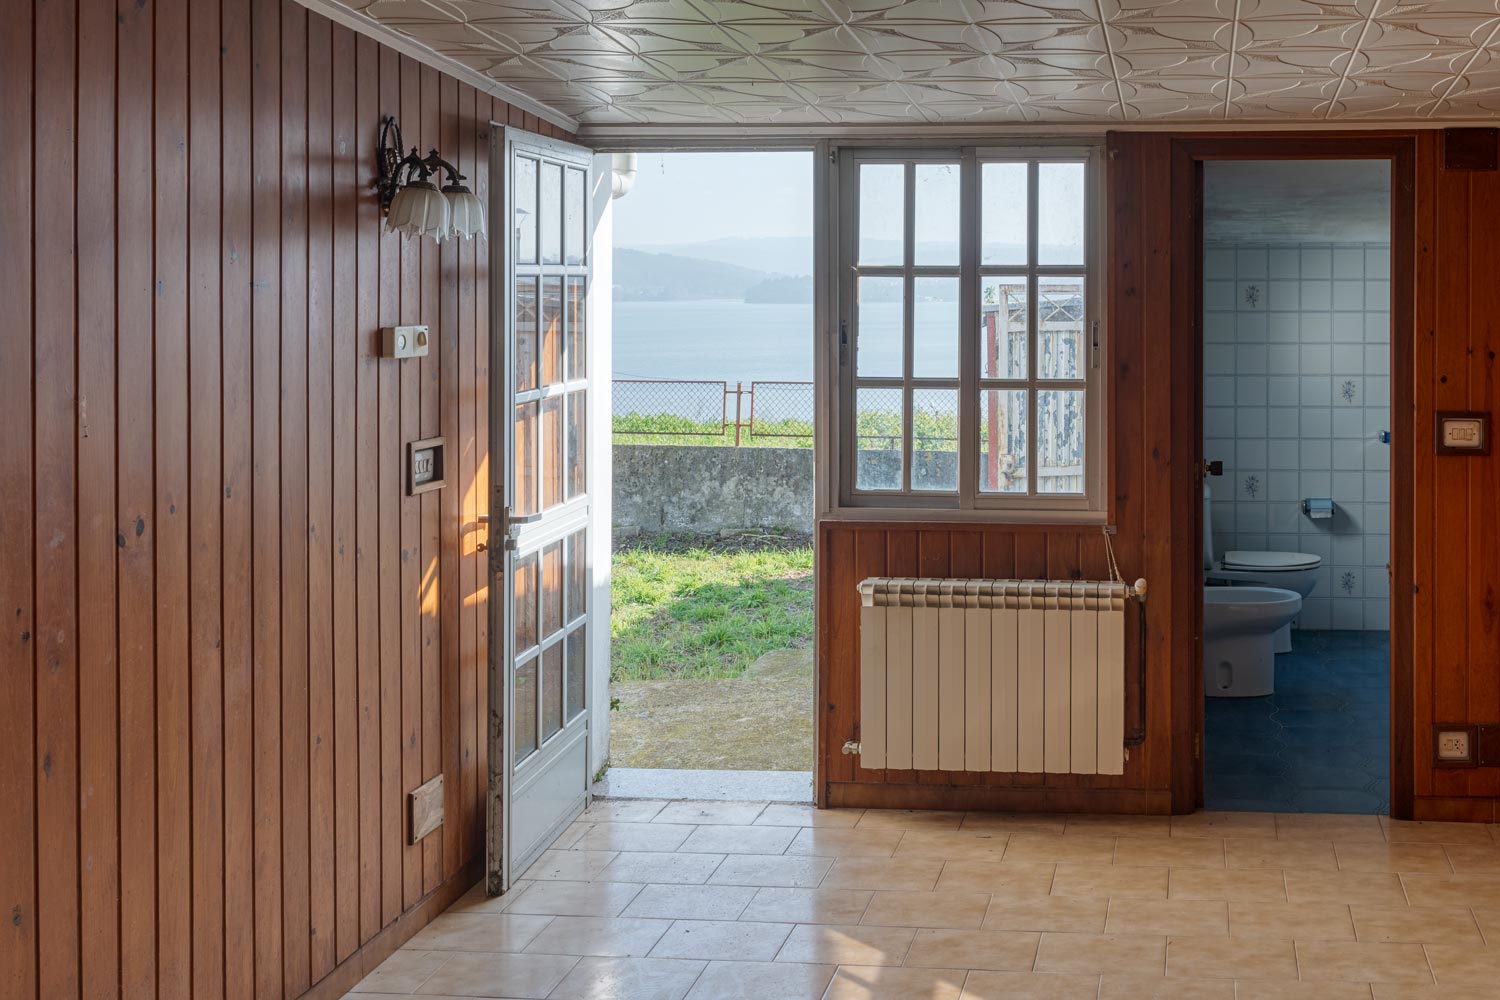 Salón y baño con puerta abierta al jardín donde se aprecian las vistas al mar